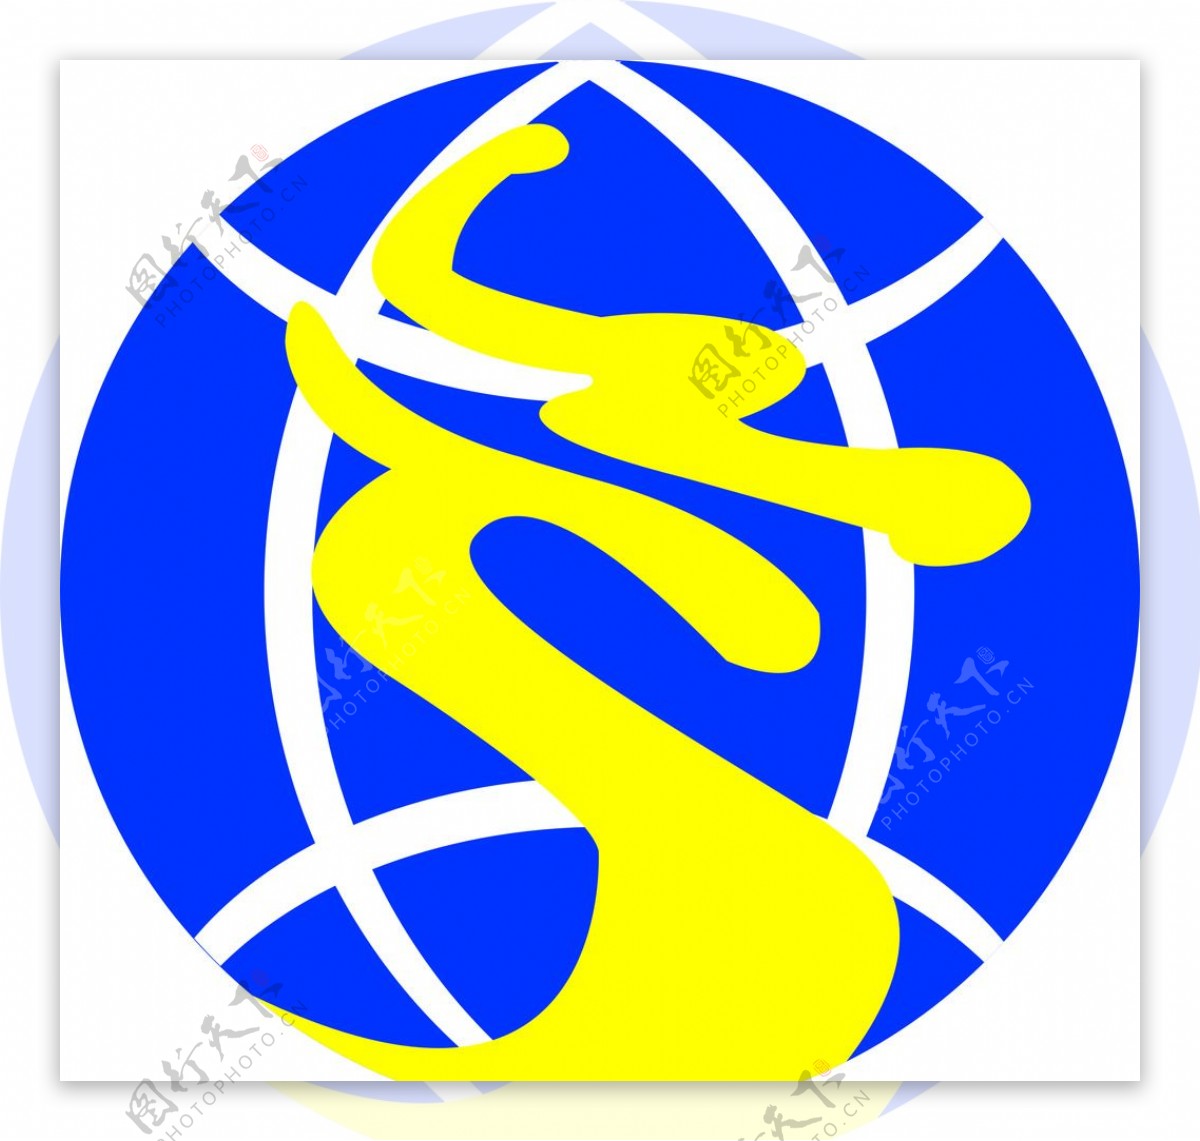 常州国际旅行社矢量logo